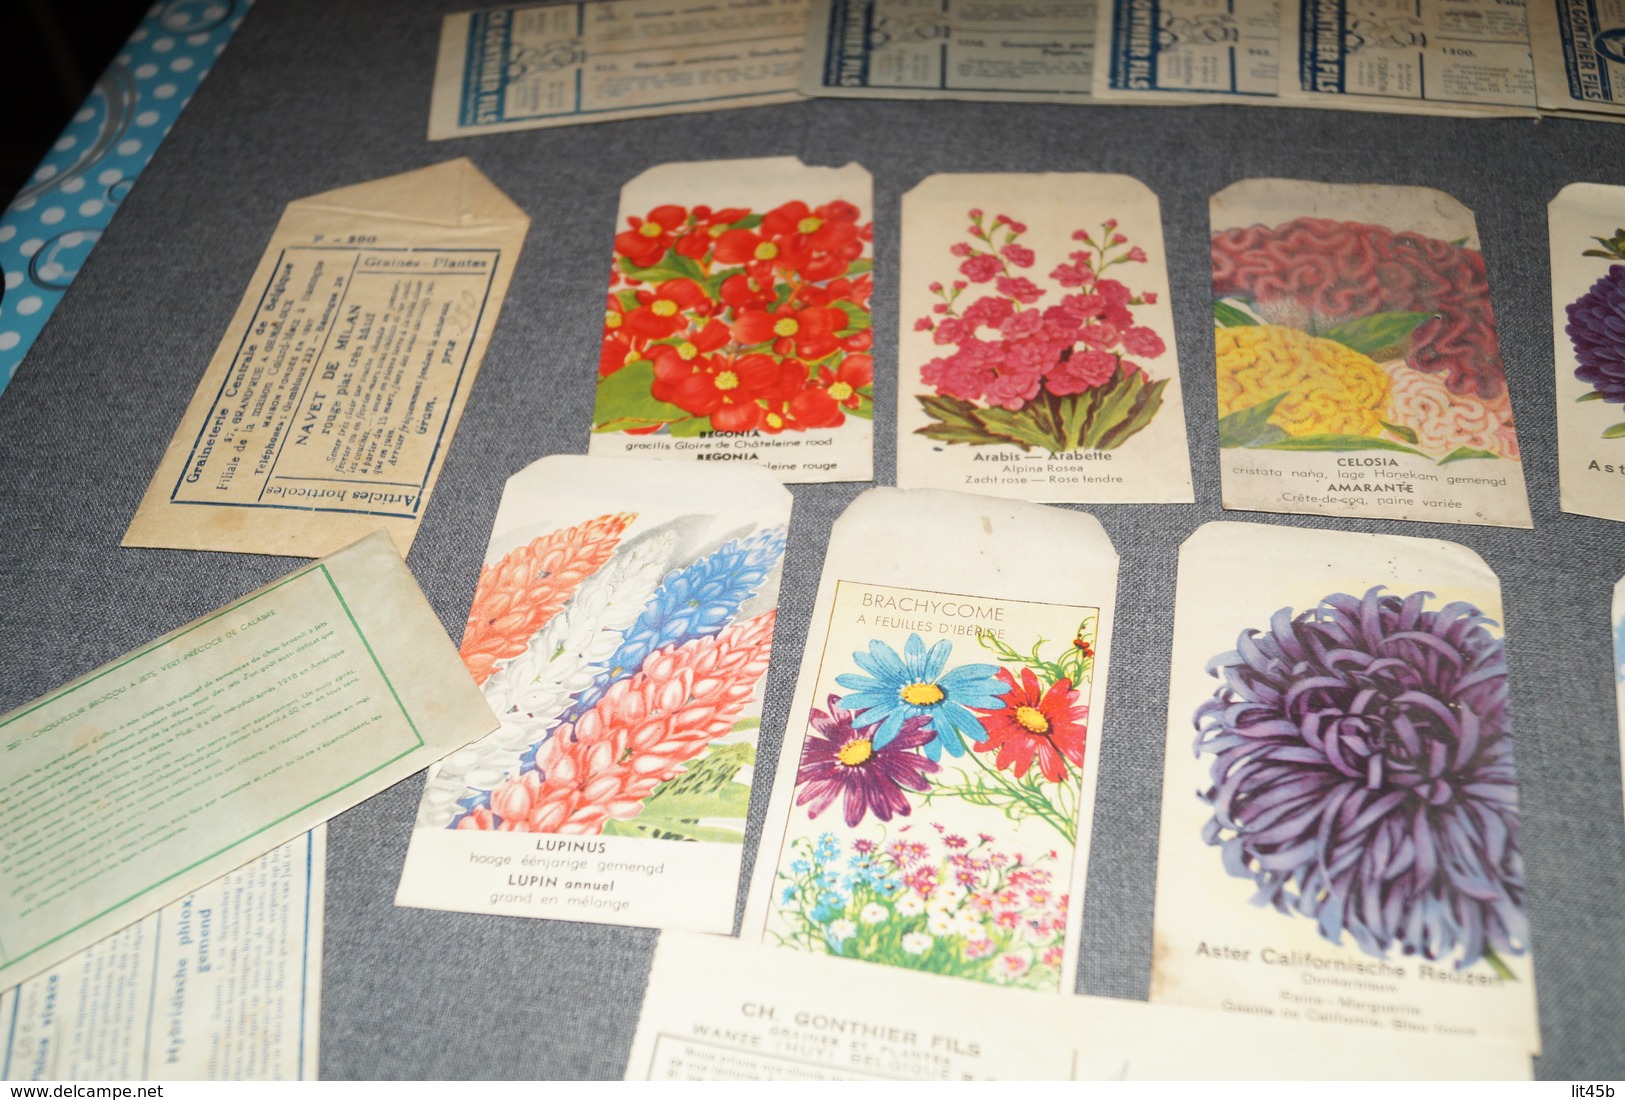 Très Beau Lot D'ancien Paquets De Semences (20),Fleurs,graines,Gonthier,etc...1947 Avec Facture D'époque,jardinage - Pubblicitari